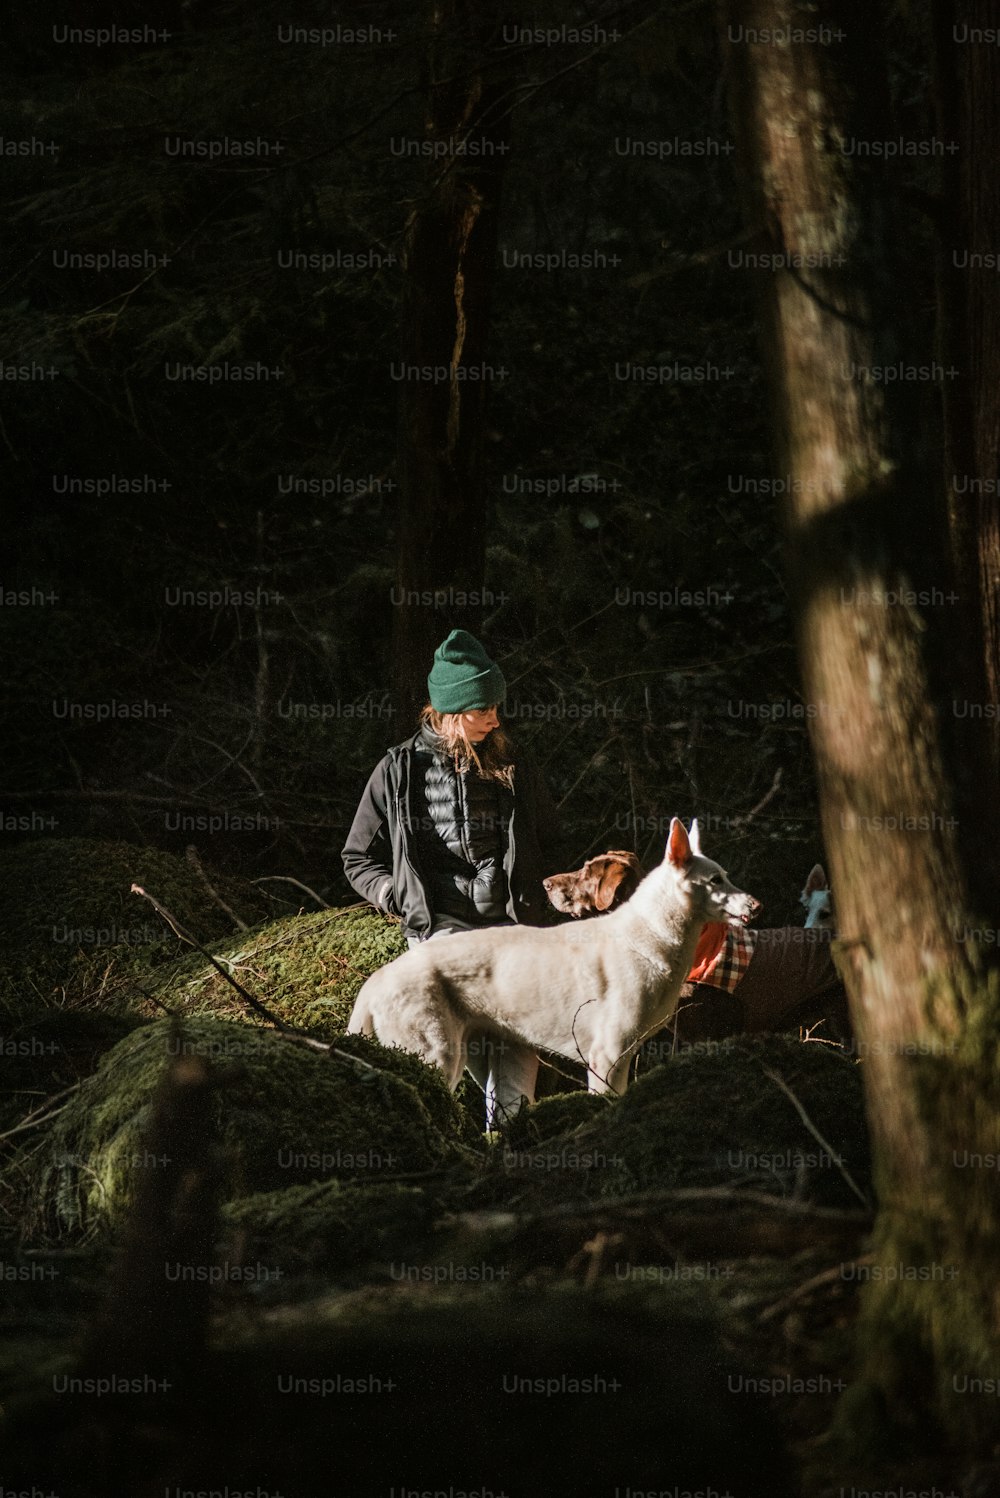 Un hombre arrodillado junto a una oveja blanca